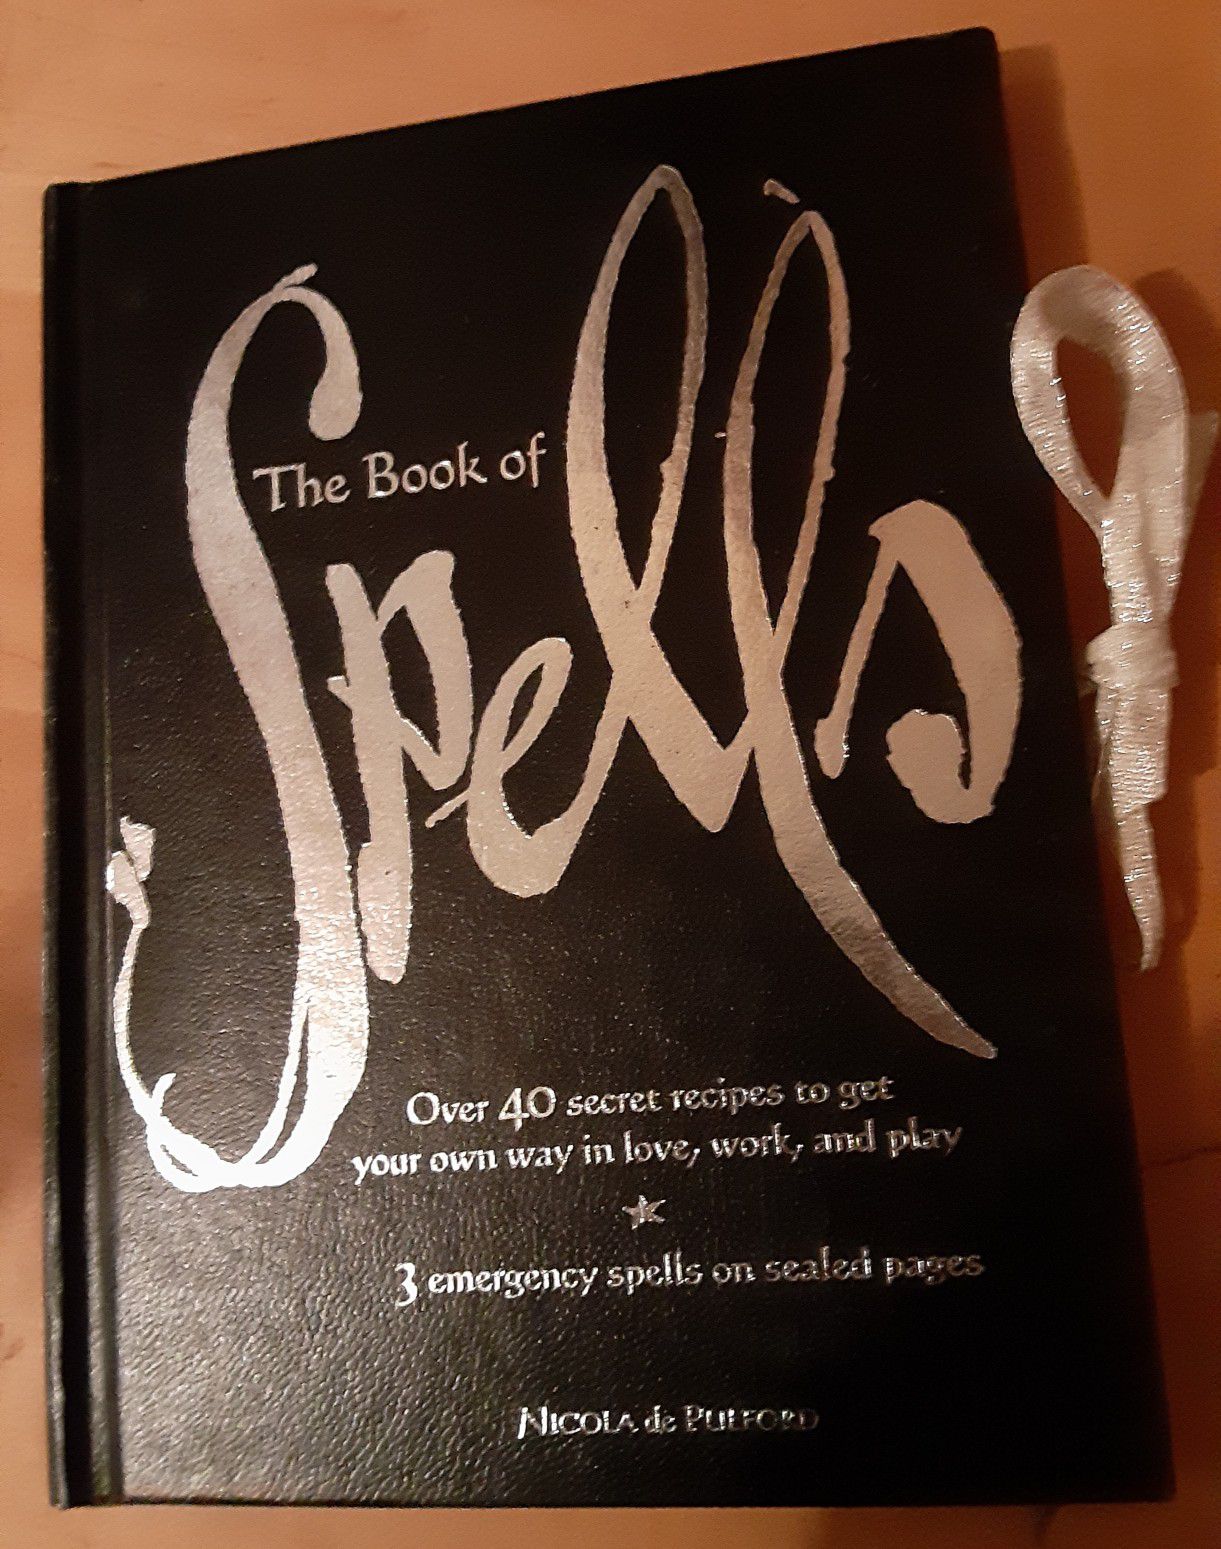 Book of spells